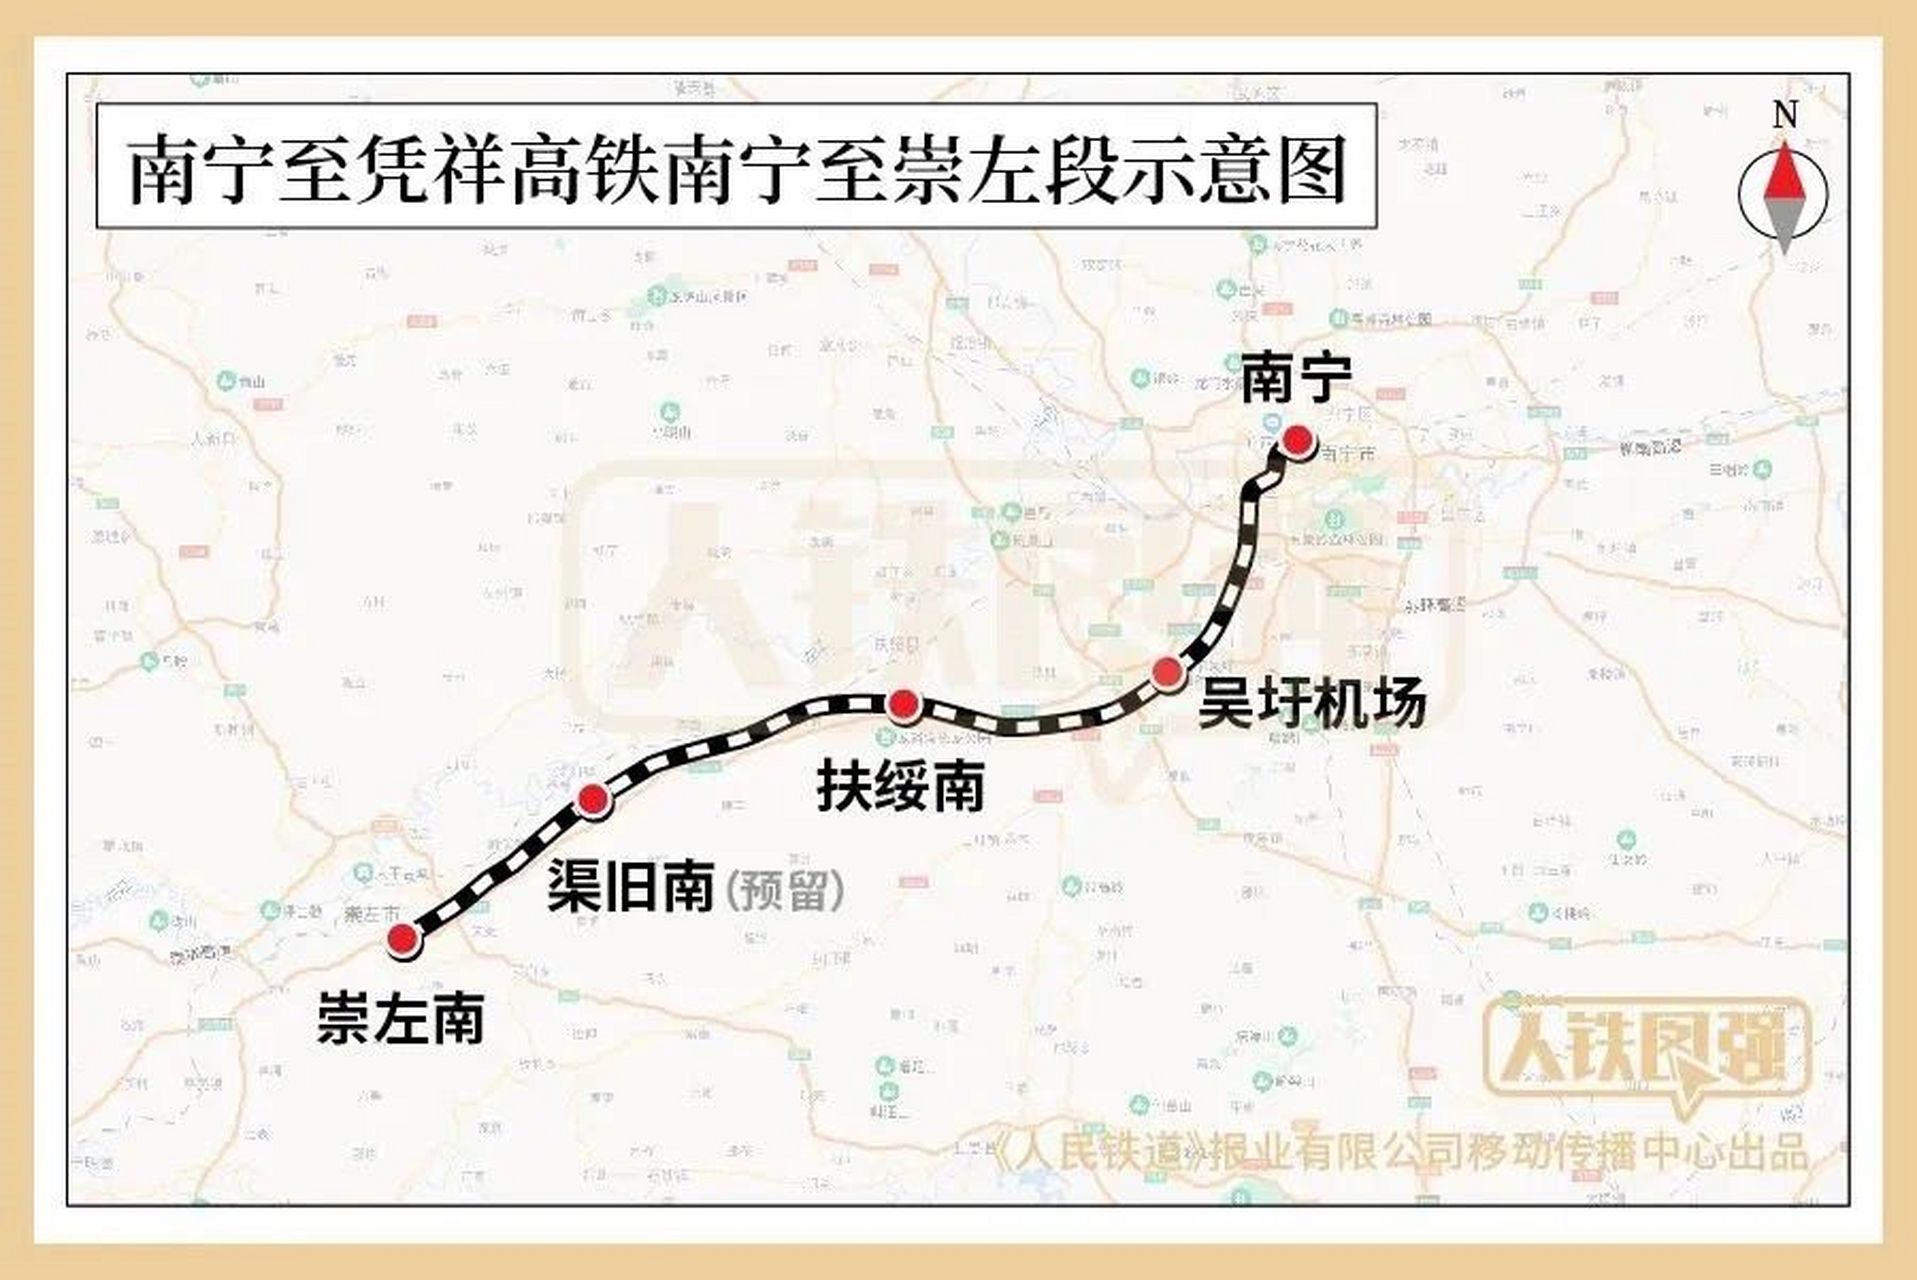 12月5日,南宁至凭祥高铁,南宁至崇左段将开通运营,南宁至崇左的旅行